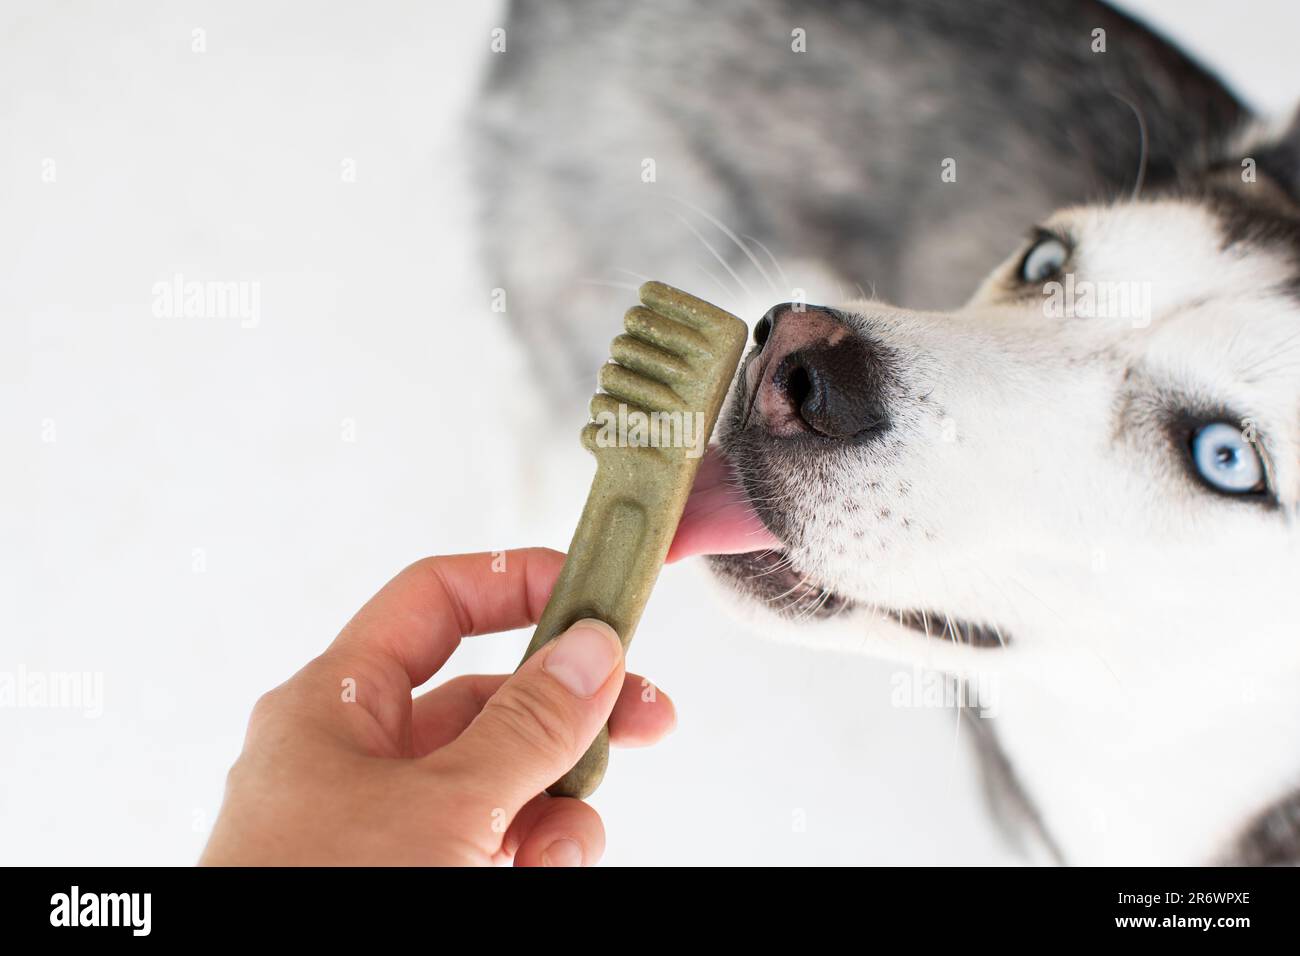 Concetto di cura dentale del cane. Husky siberiano con trattamenti dentali. Dare un regalo a un cane. Foto Stock